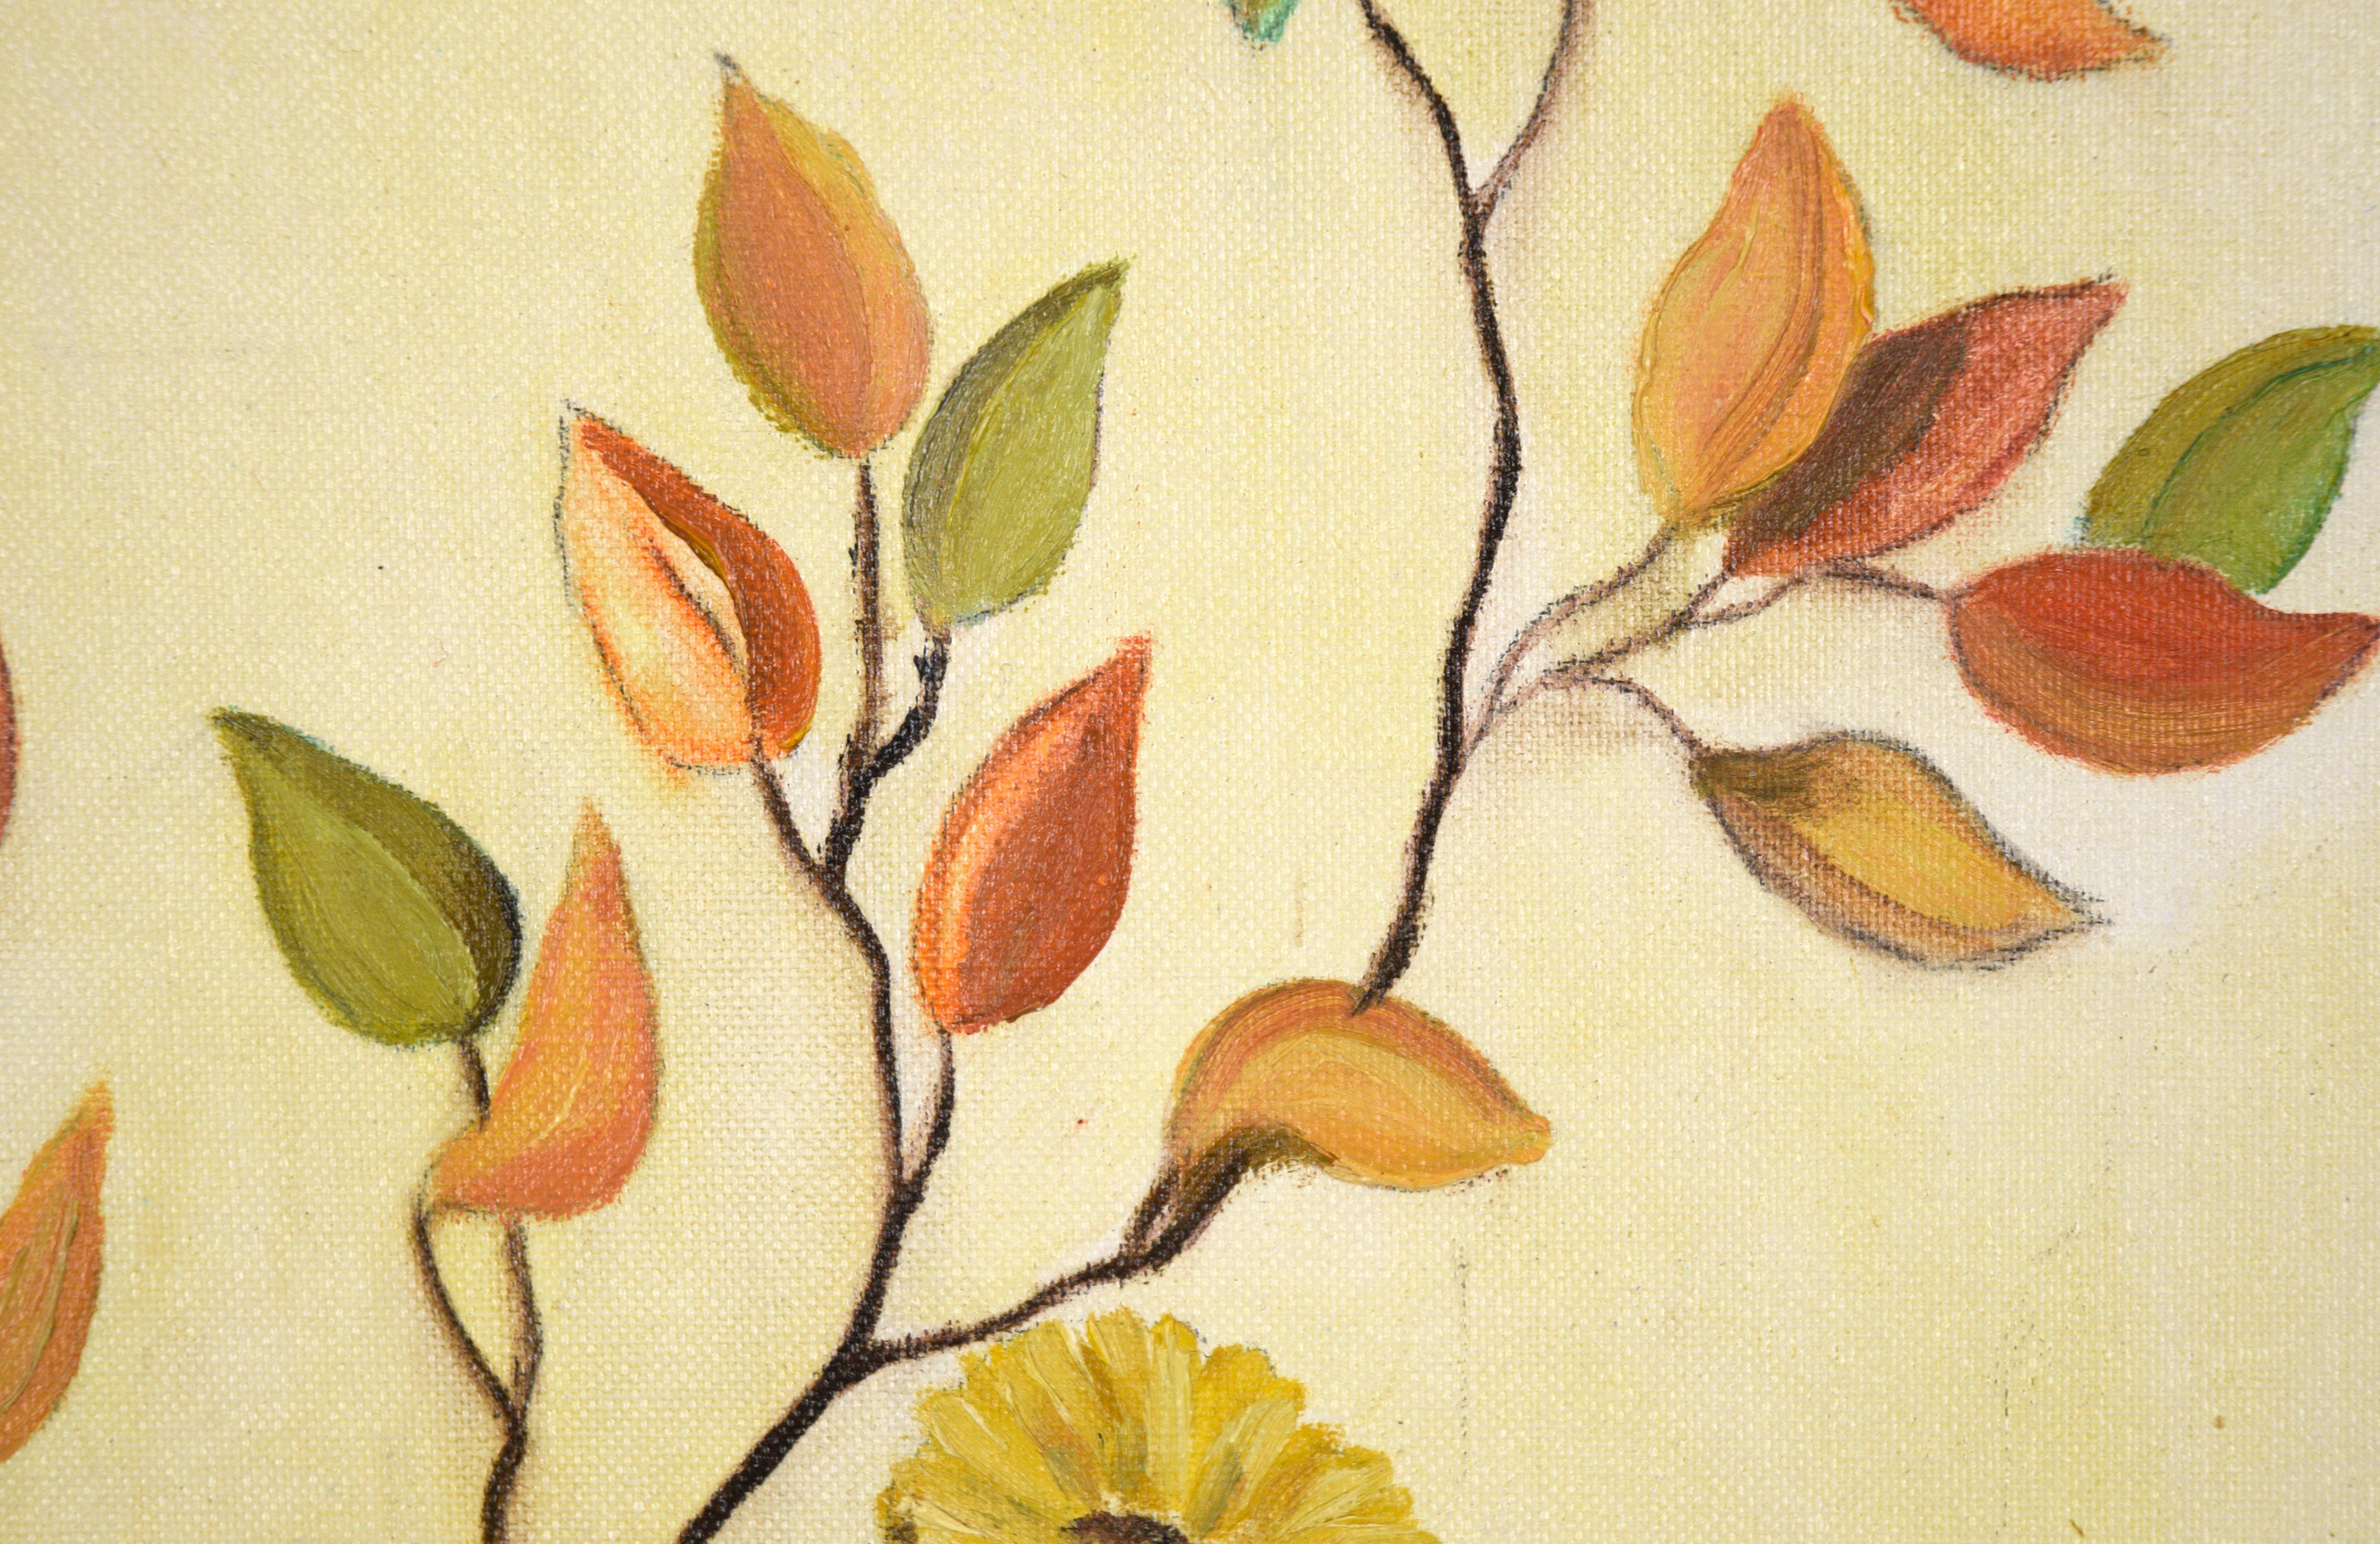 Mid-Century-Stillleben mit gelben Blumen und orangefarbenen Blättern (Amerikanischer Impressionismus), Painting, von Jean M. Stites